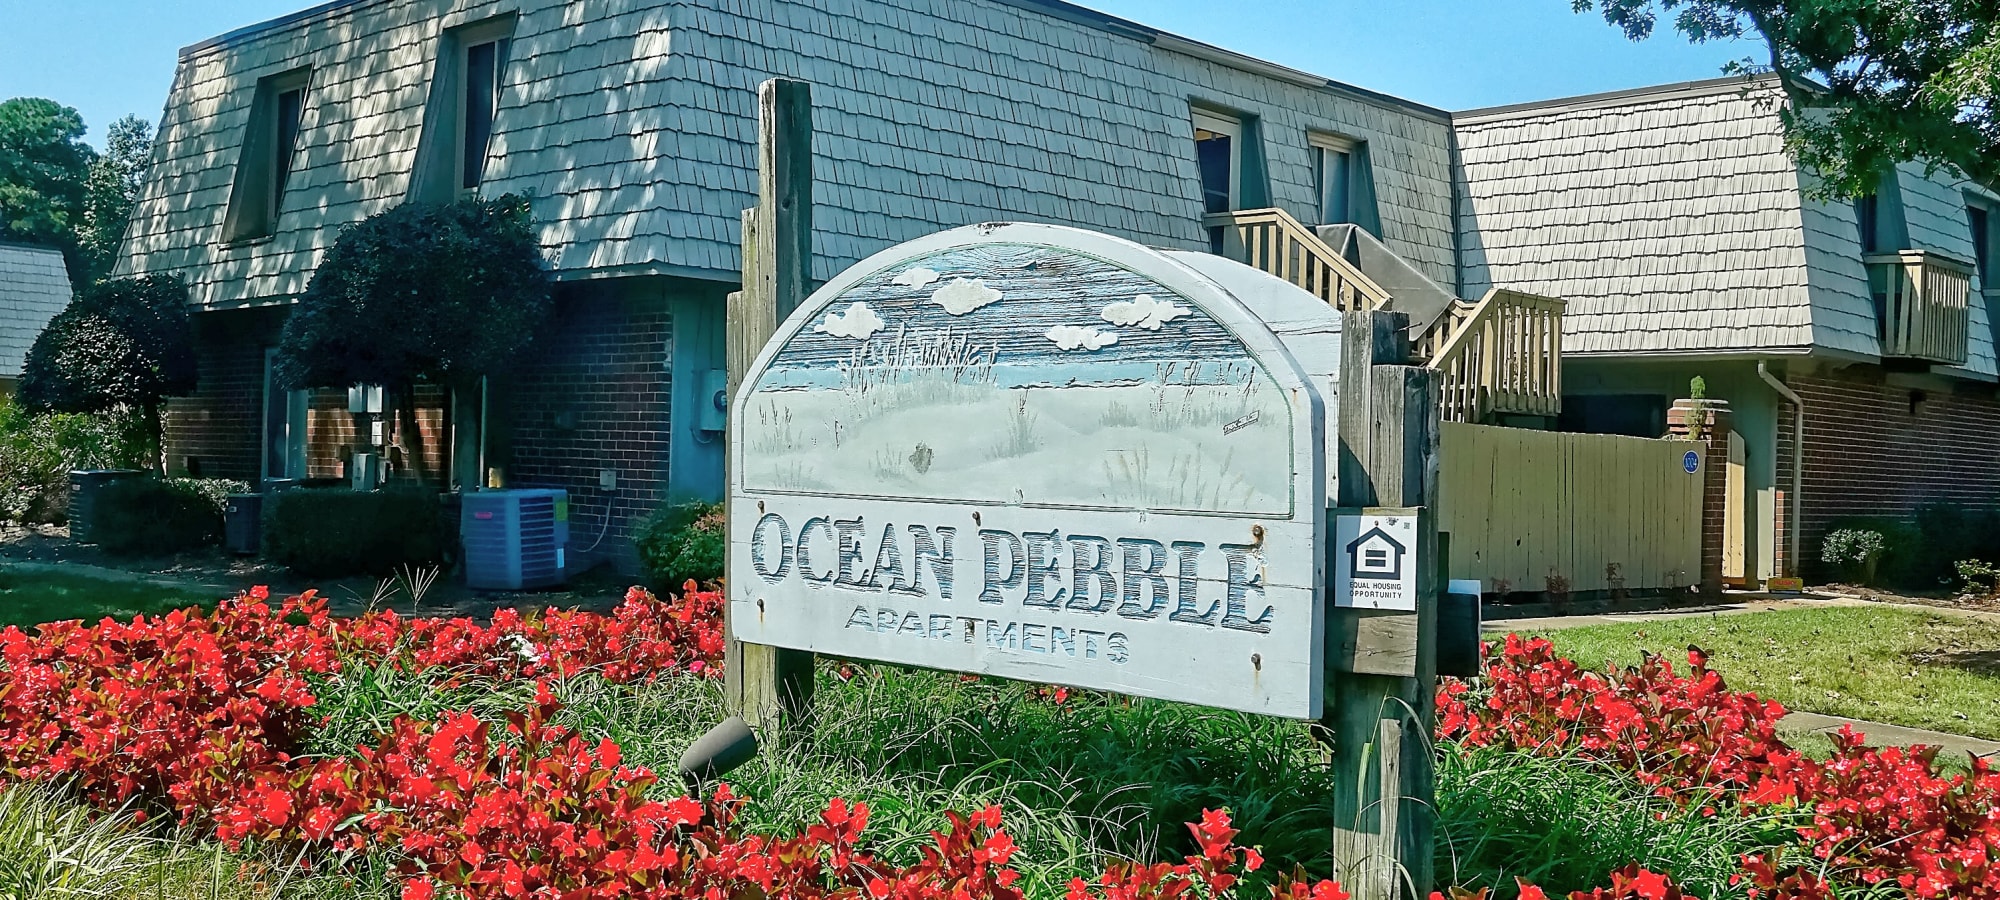 Entrance of complex at Ocean Pebbles in Virginia Beach, Virginia